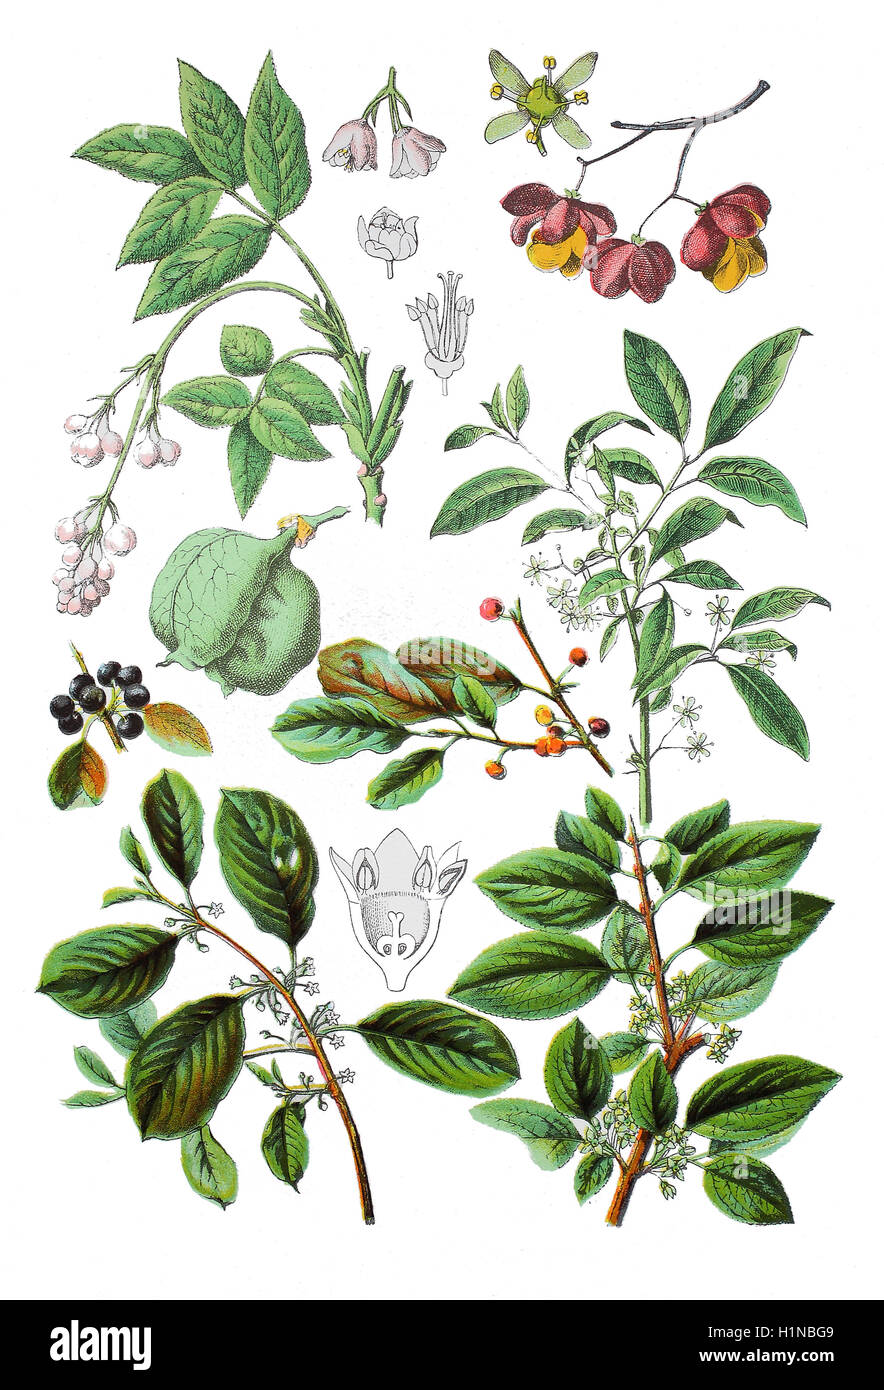 Staphylaea Pinnata (oben links), gemeinsame Spindel, Euonymus Europaeus (oben rechts Und Mitte), Europäische Bladdernut, Faulbaum, Frangula Alnus (Fussteil links), gemeinsame Kreuzdorn, Rhamnus Cathartica (Fussteil rechts) Stockfoto